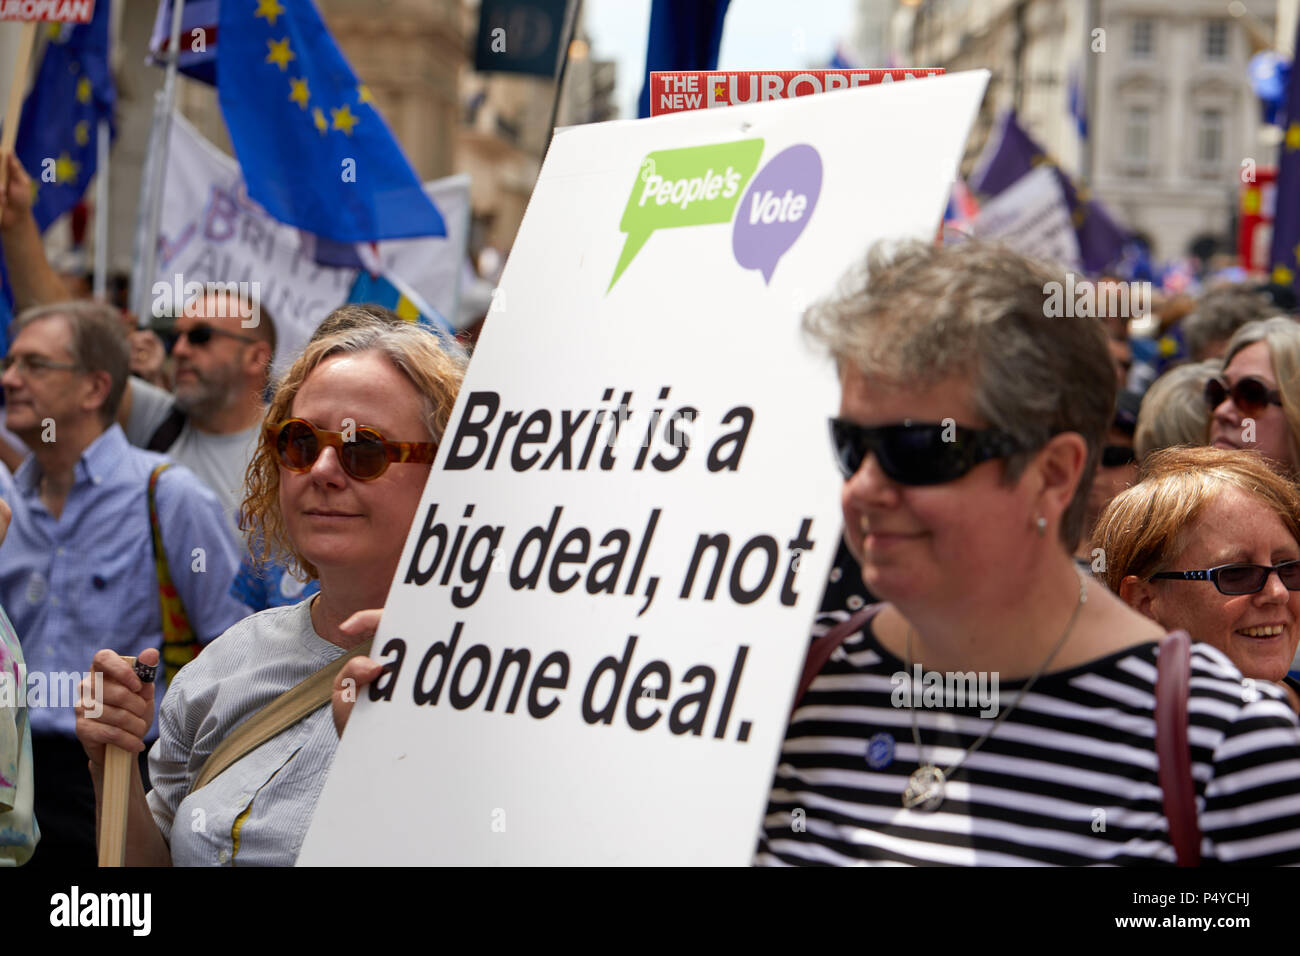 Londres, Reino Unido. 23 de junio de 2018: Los manifestantes mantenga una pancarta pidiendo un pueblo vote durante el voto popular de marzo. Crédito: Kevin Frost/Alamy Live News Foto de stock